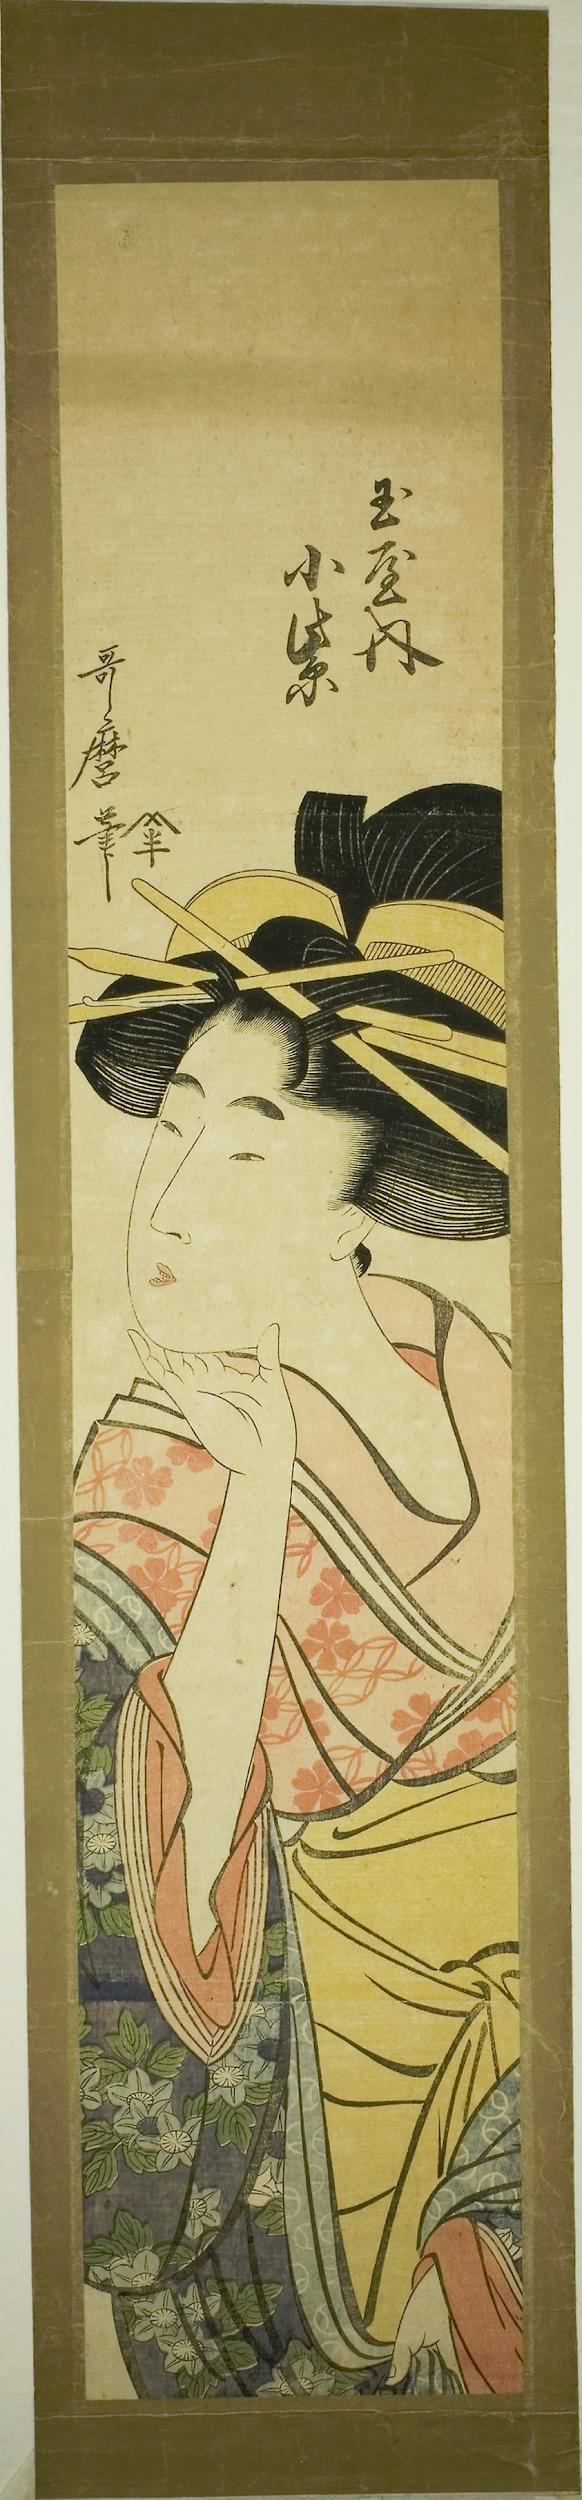 Image of The Courtesan Komurasaki of the Tamaya by Kitagawa Utamaro